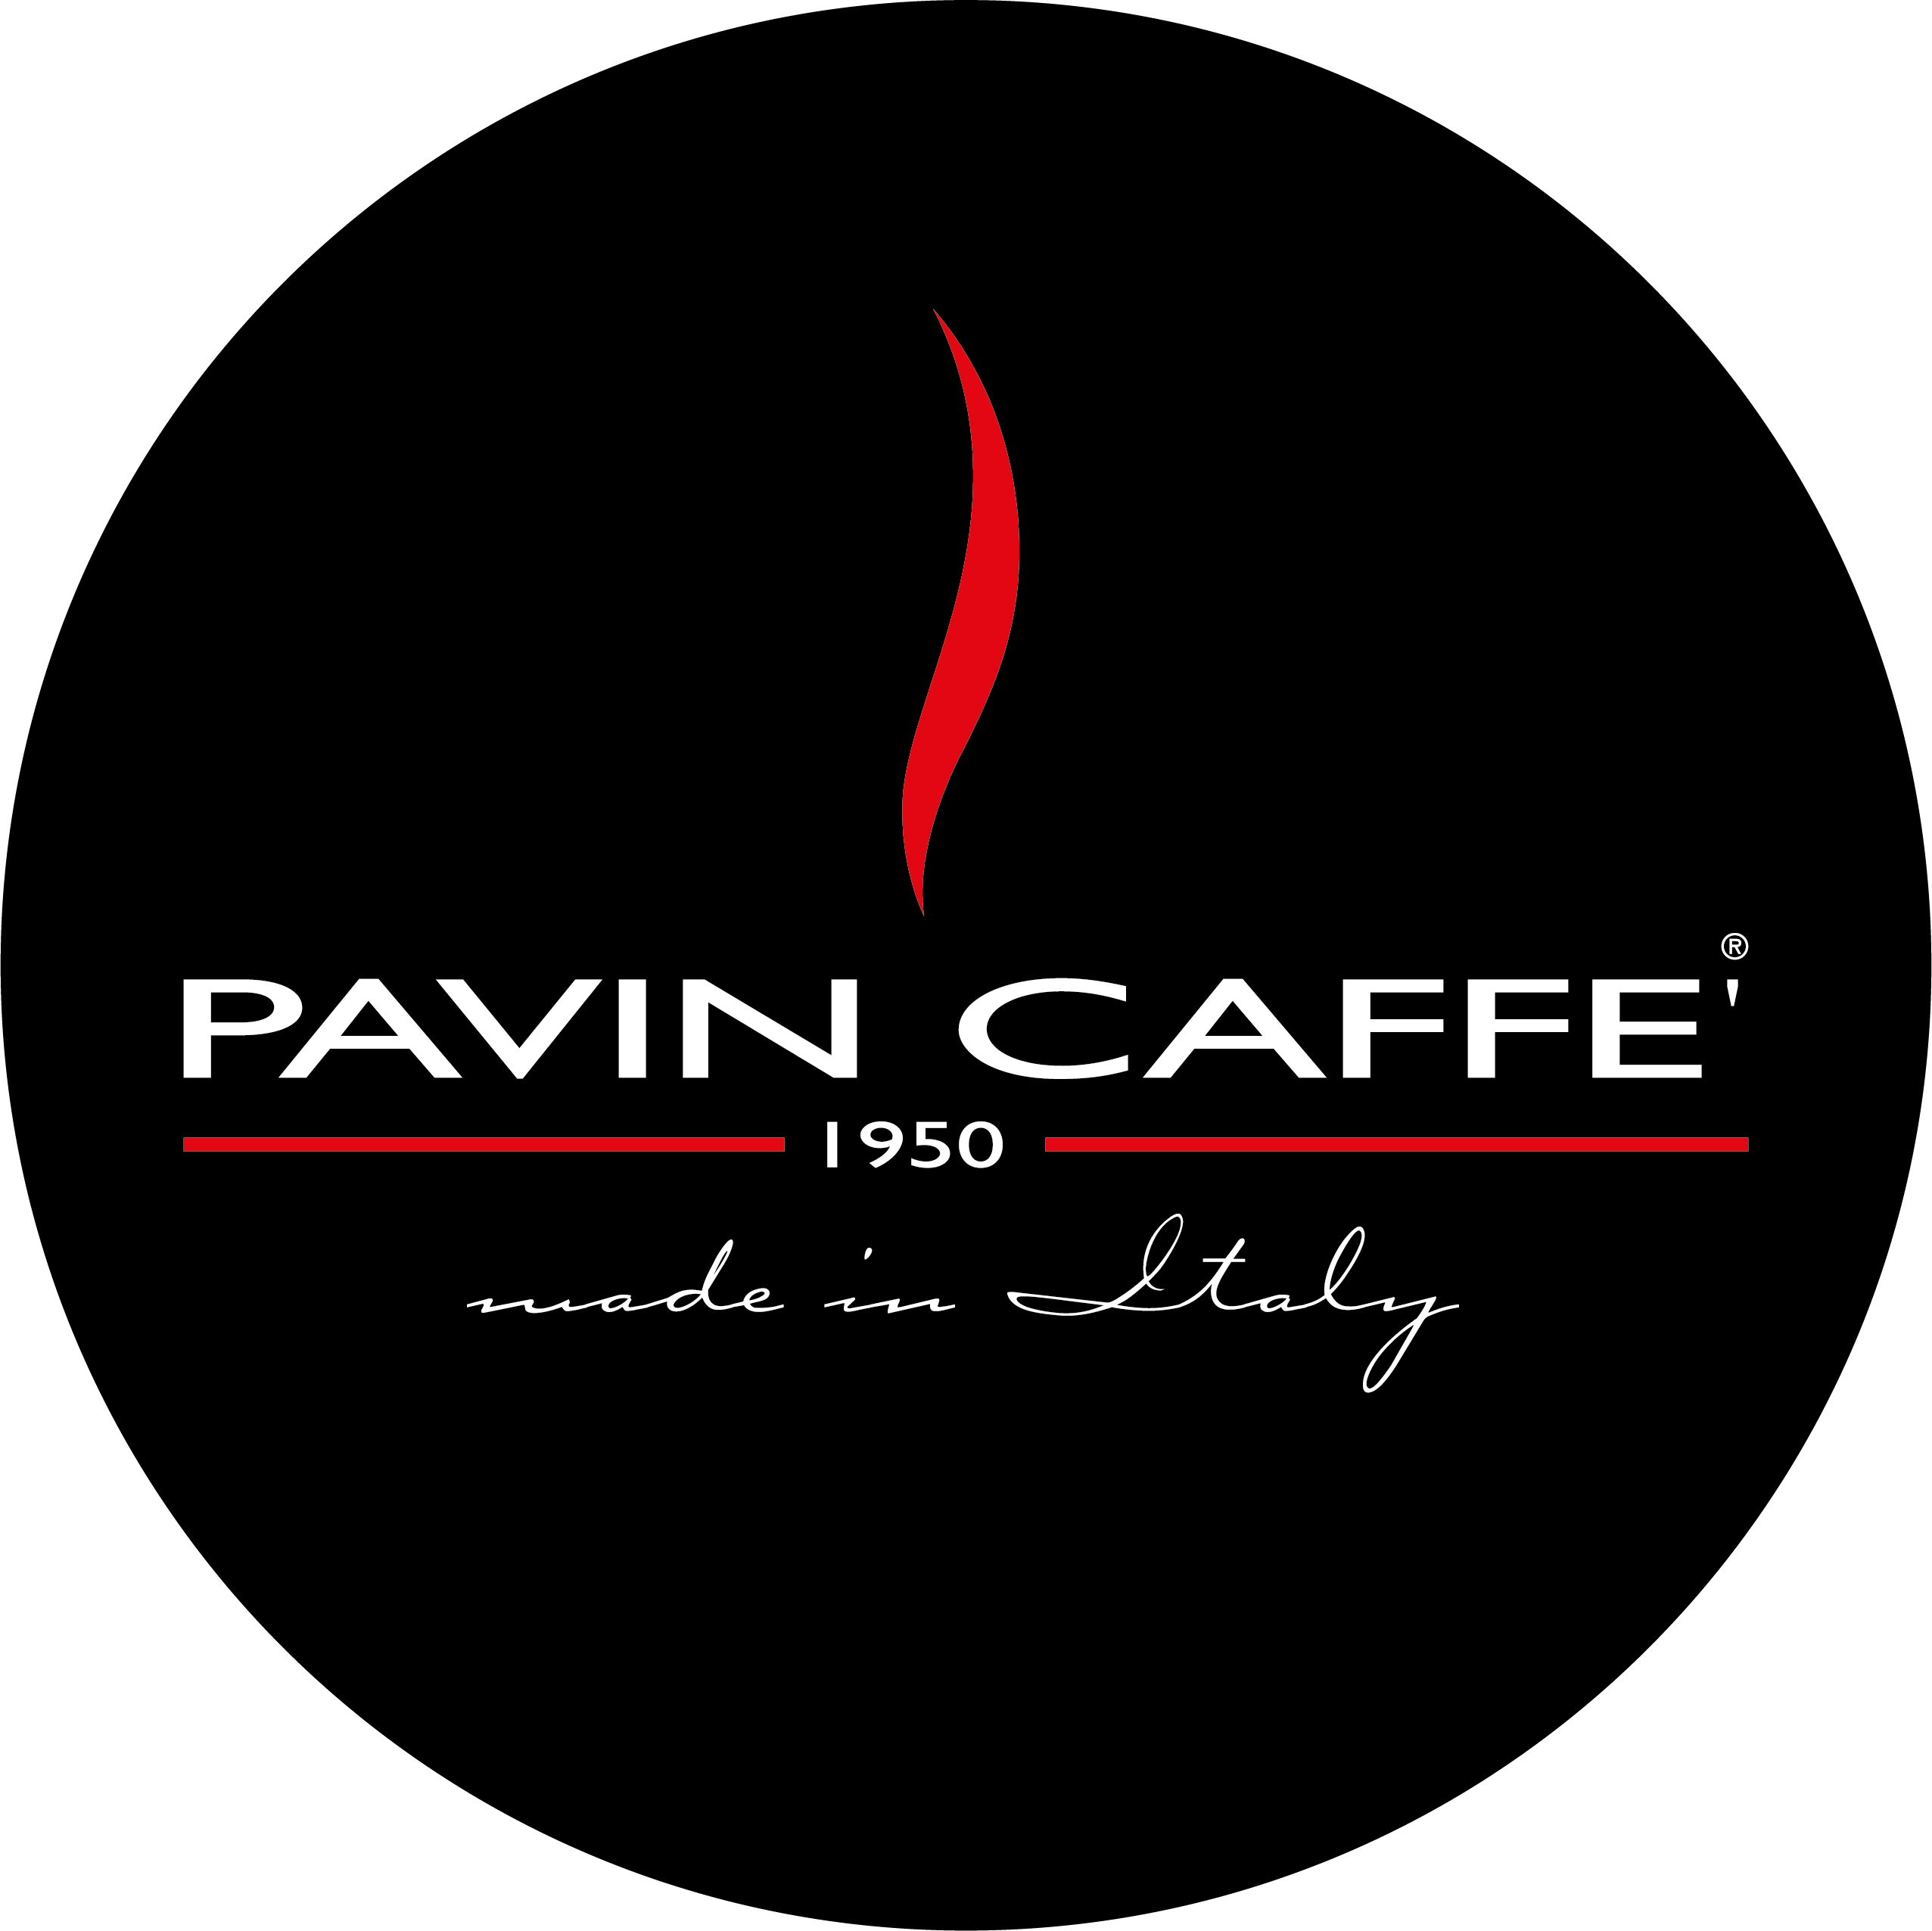 Pavin Caffé